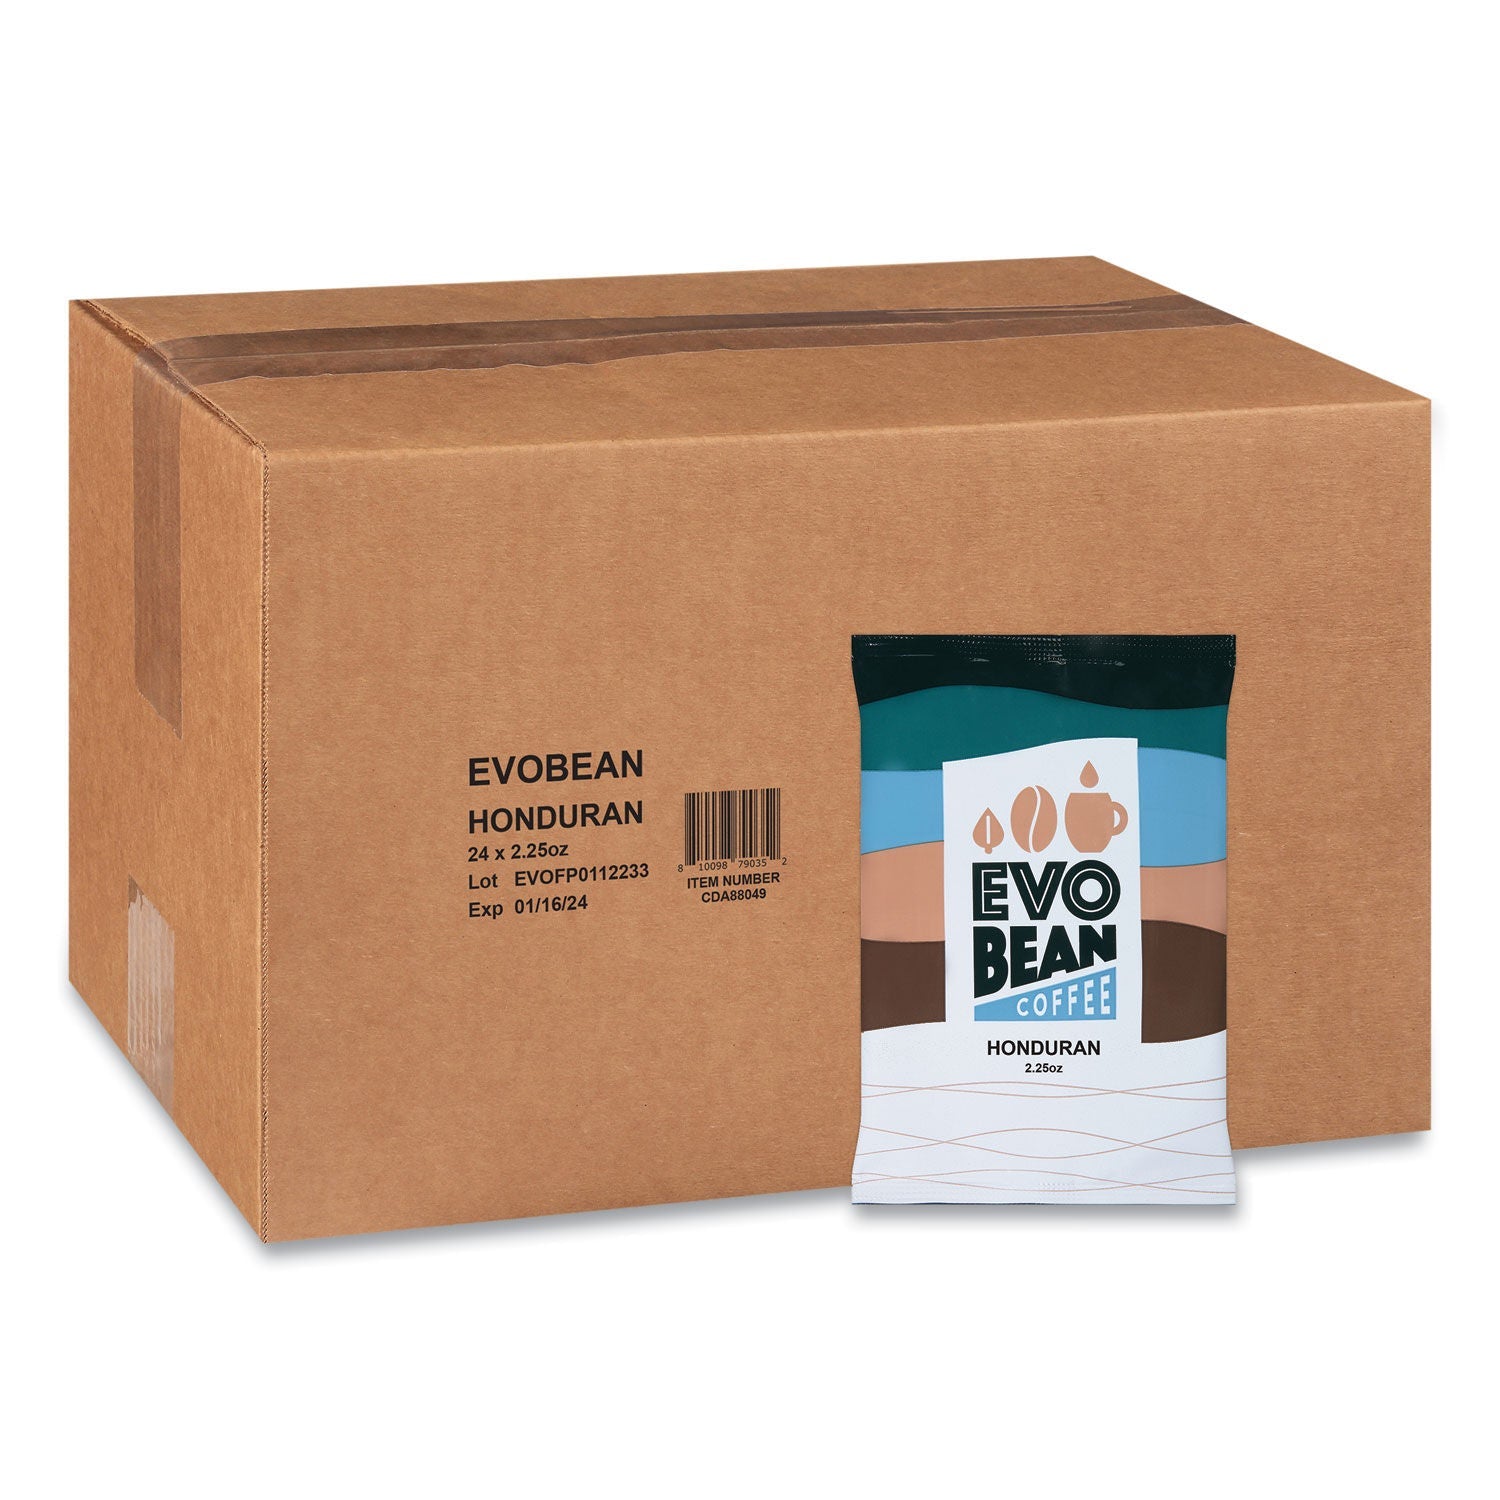 Evobean Honduran Coffee Whole Bean 2 Lb Box